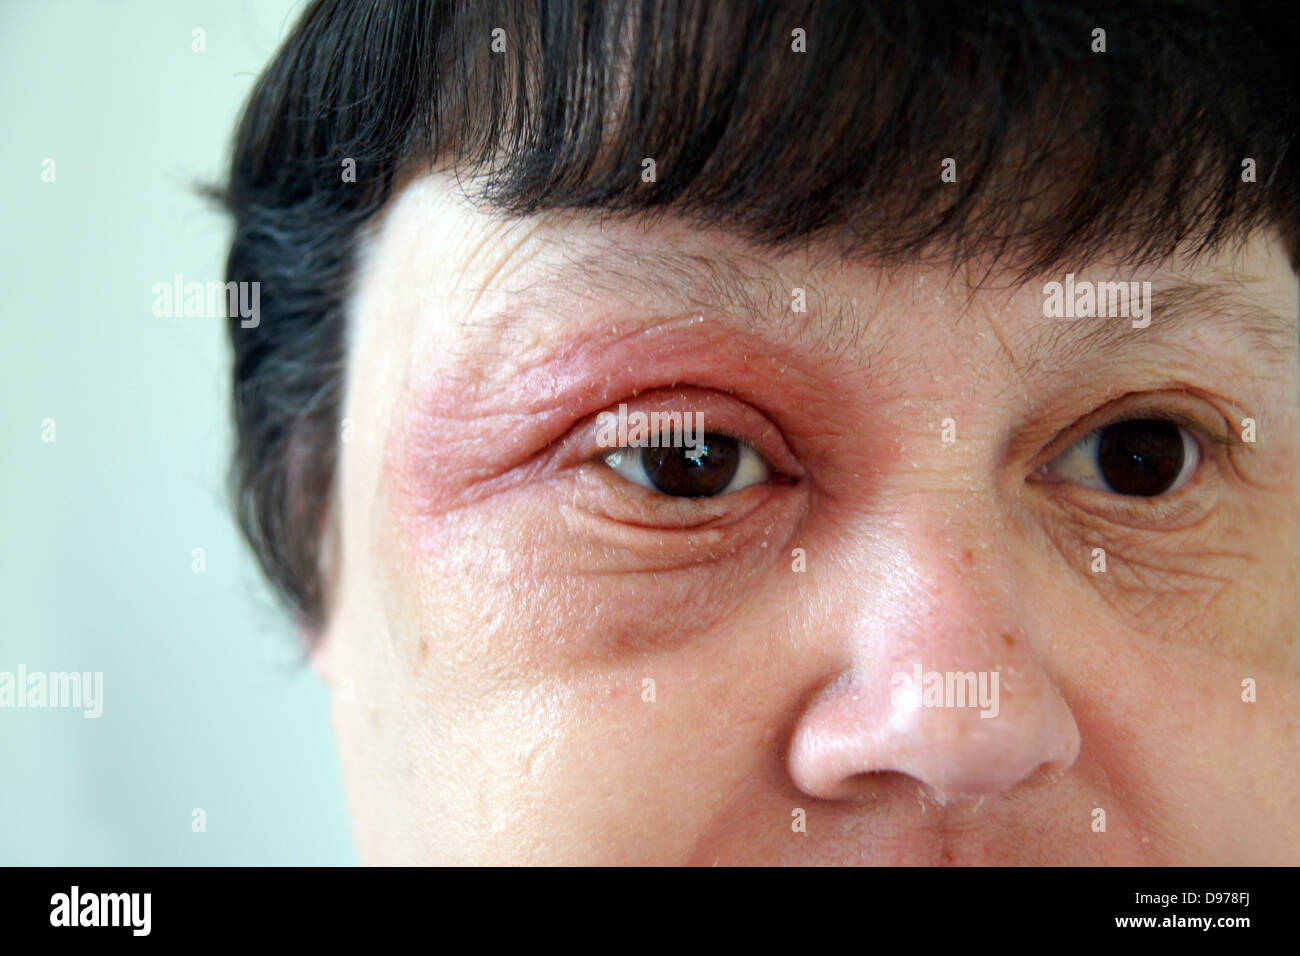 La donna la sofferenza con eczema & una eruzione cutanea che coprono la maggior parte del viso con il dolore che circonda e che colpiscono gli occhi Foto Stock